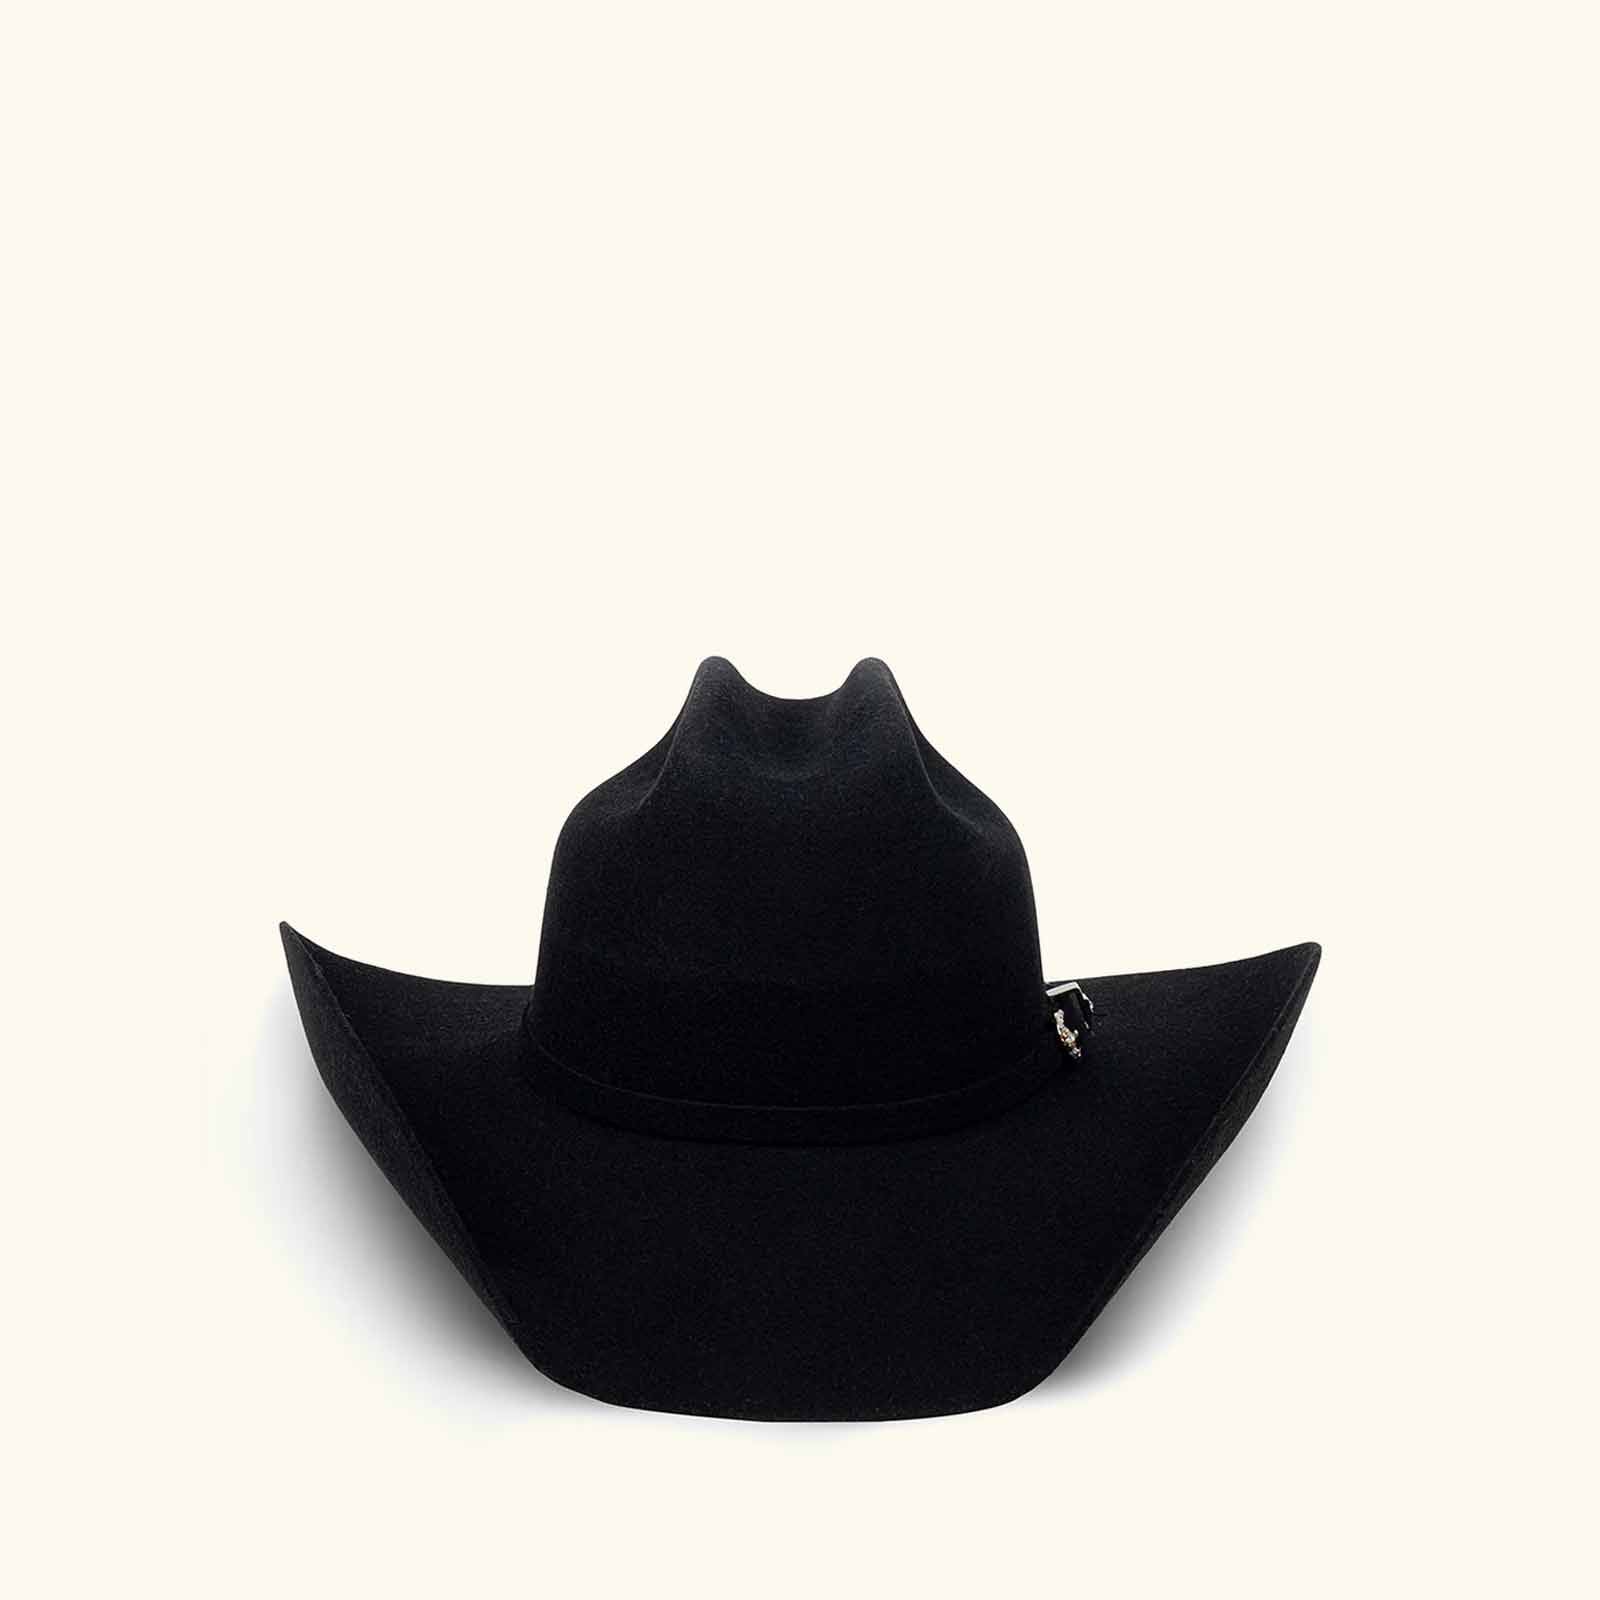 Sombrero de vaquero negro